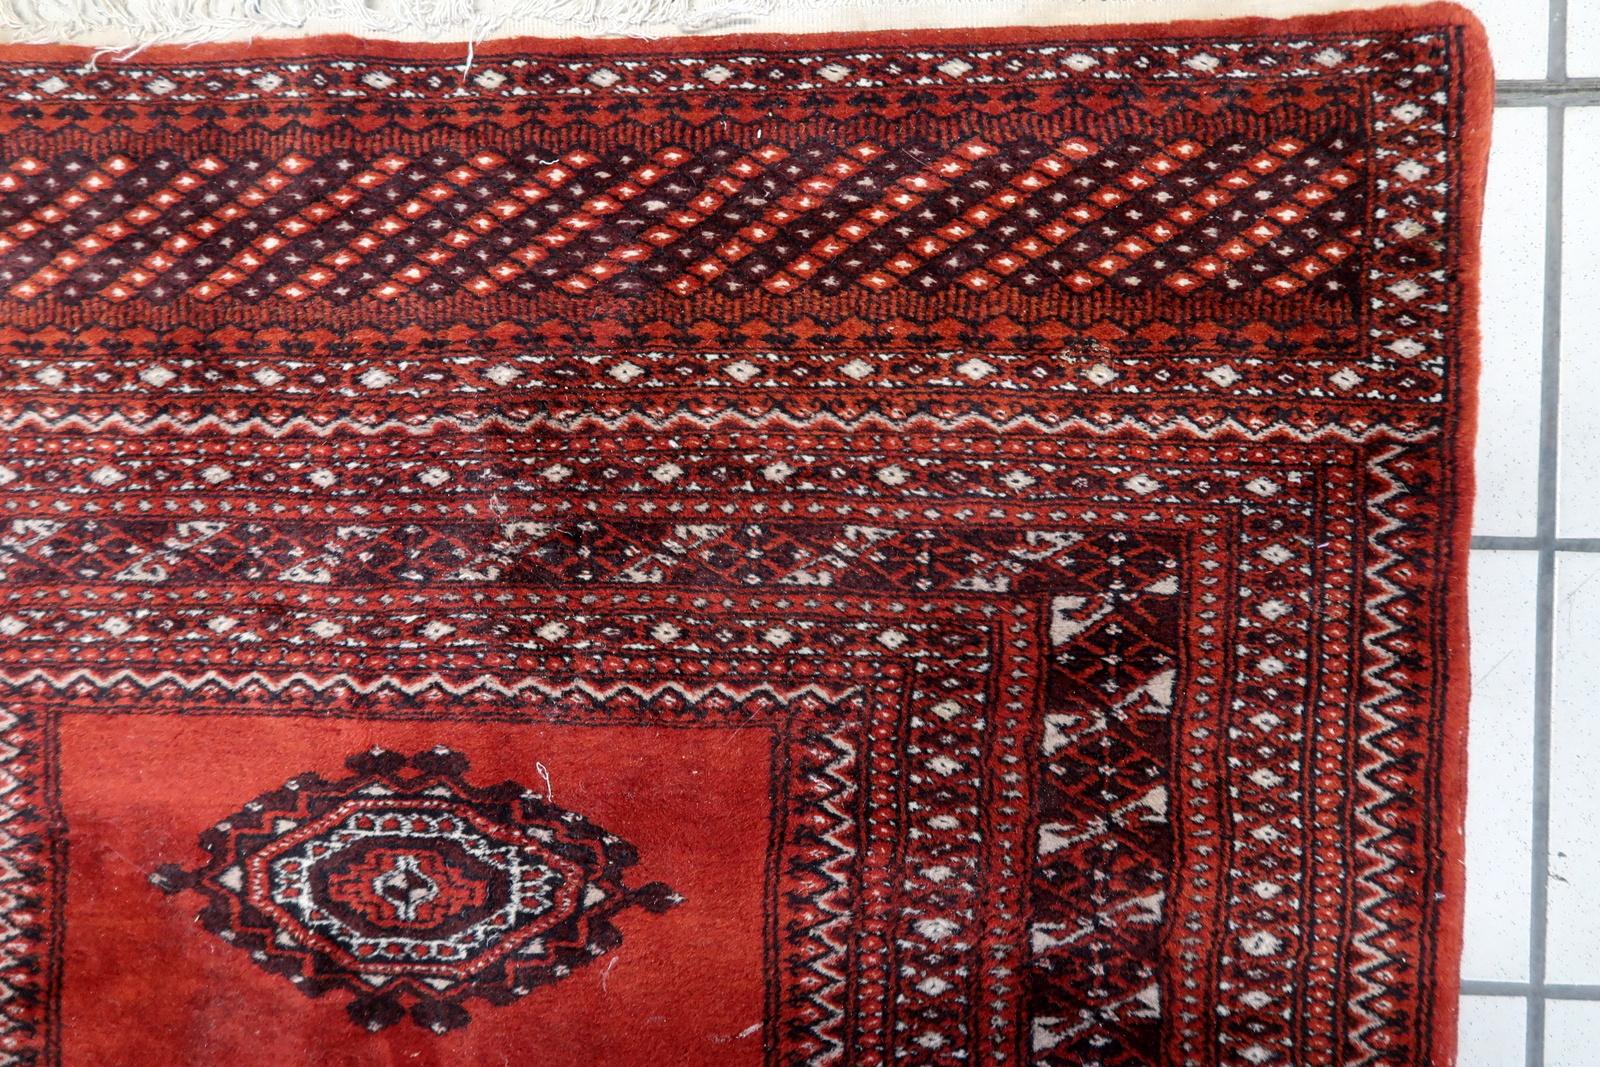 Dieser handgefertigte usbekische Vintage-Buchara-Teppich aus den 1950er Jahren verleiht Ihrem Raum eine zeitlose Eleganz. Mit den Maßen 3' x 5.1' (94cm x 156cm) bietet dieser exquisite Teppich ein traditionelles Design, das jedem Raum Charakter und